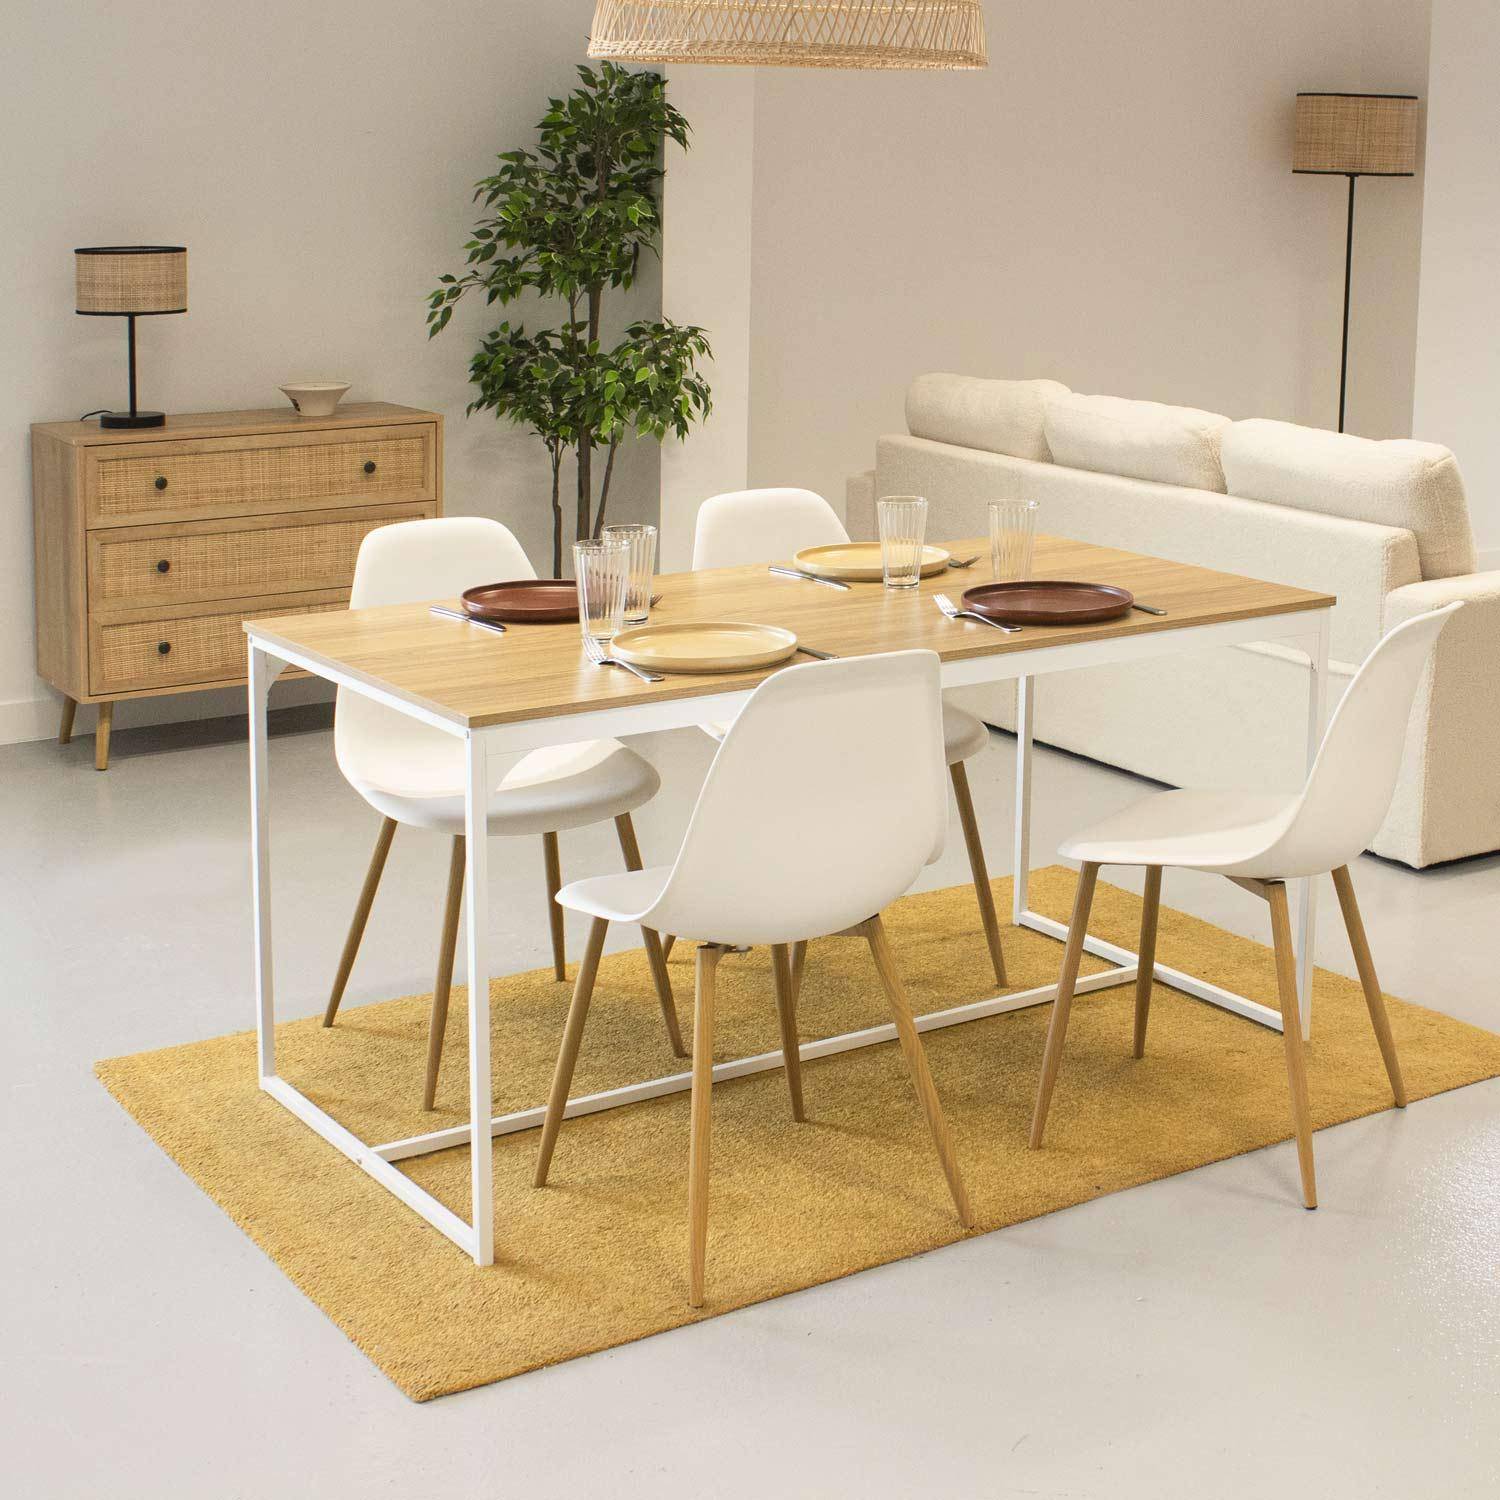 Rechthoekige eettafel wit metaal 150cm + 4 eetkamerstoelen stoelen, houtkleurige metalen poten, witte zitting Photo1